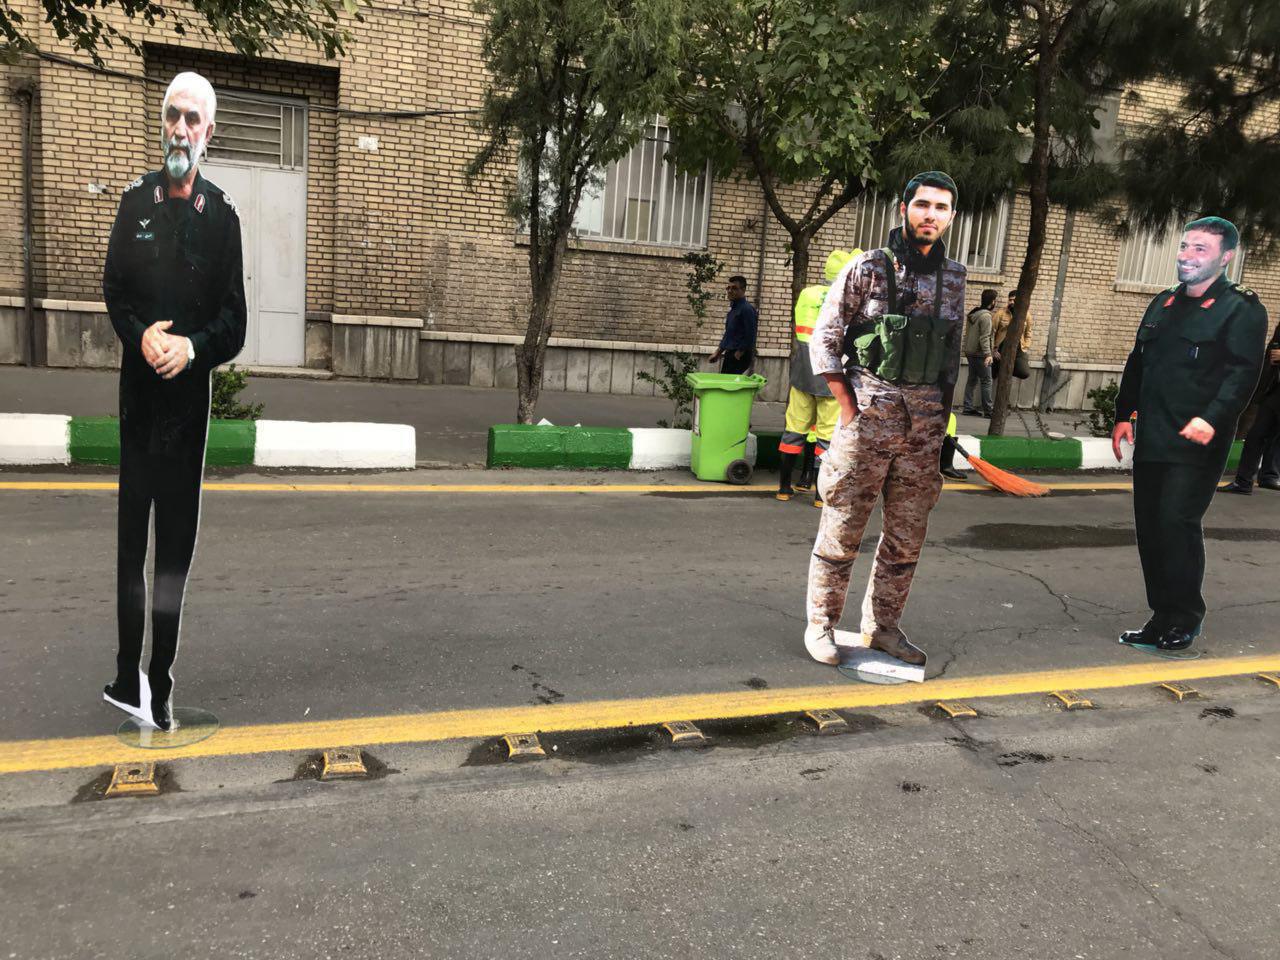 عکس:: در حاشیه مراسم ١٣آبان تهران